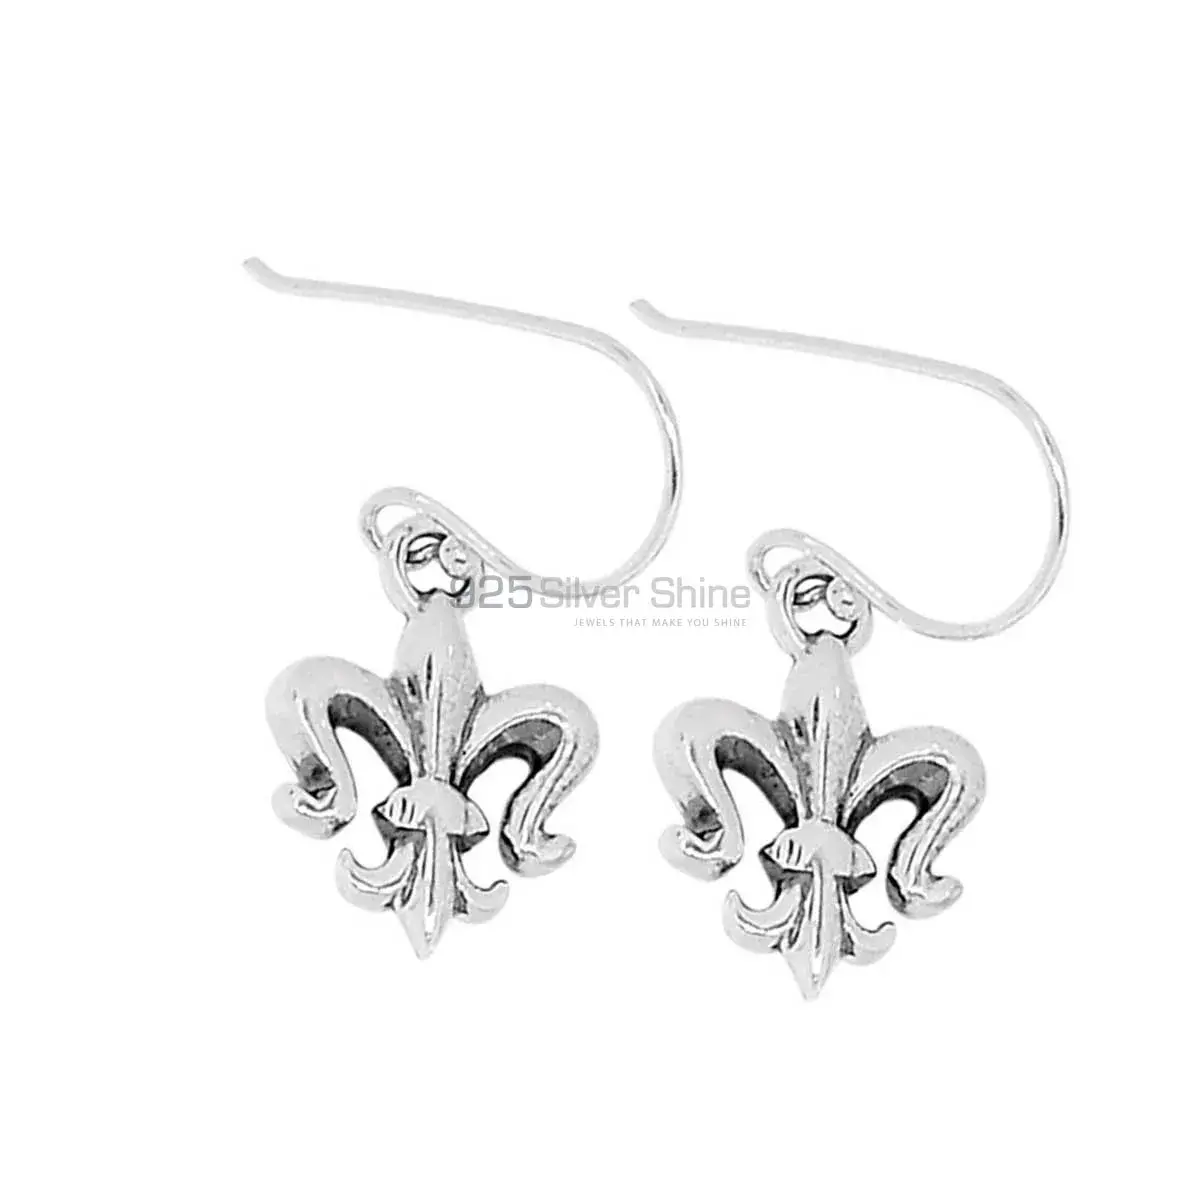 Beautiful 925 Sterling Silver Handmade Earrings Jewelry 925SE2869_3